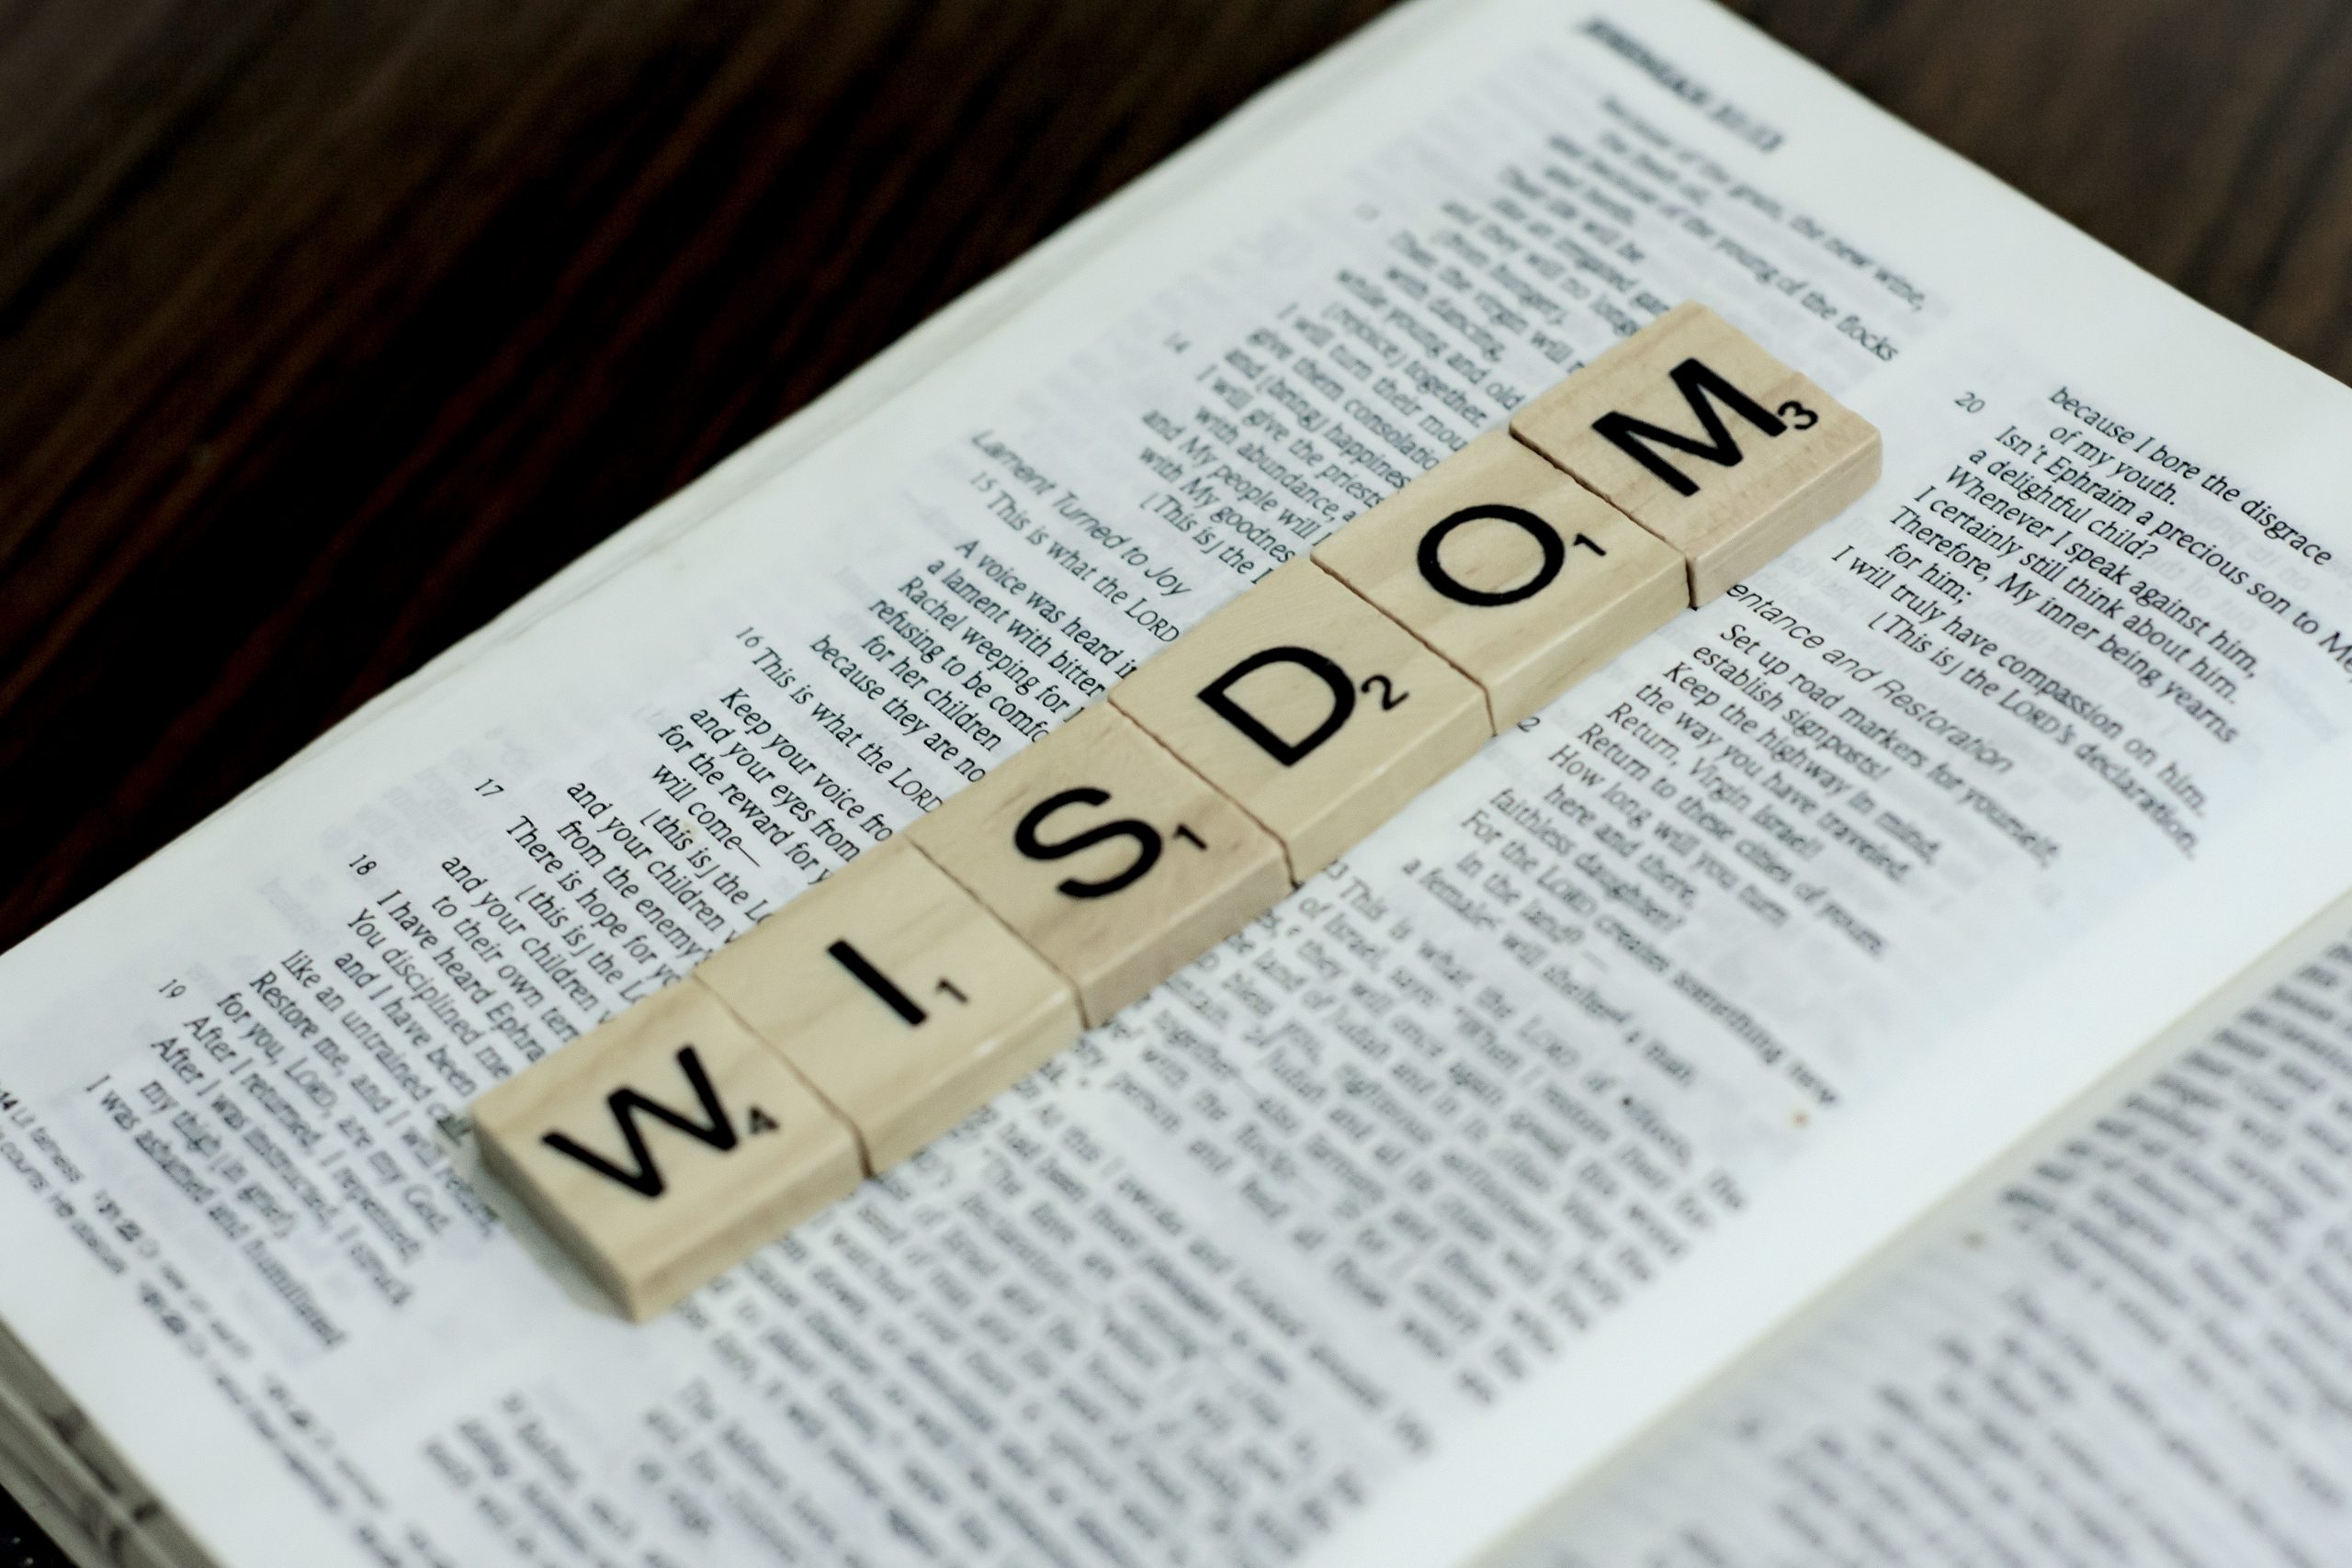 Scrabble letters spell wisdom on an open Bible